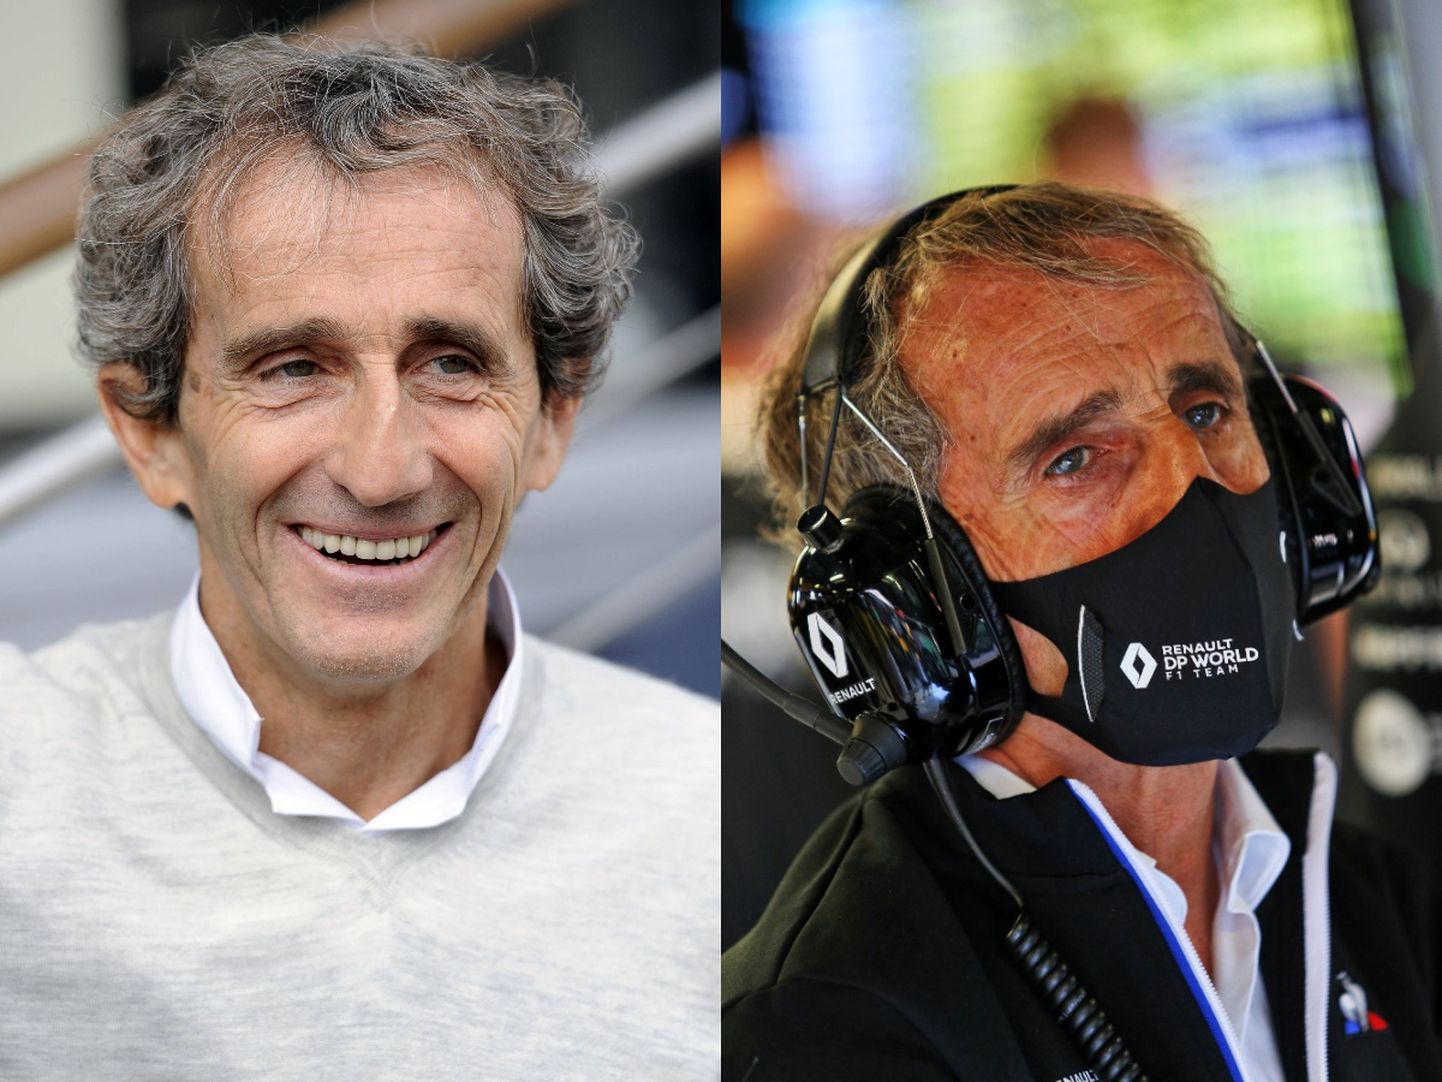 Vormelilegend Alain Prost.